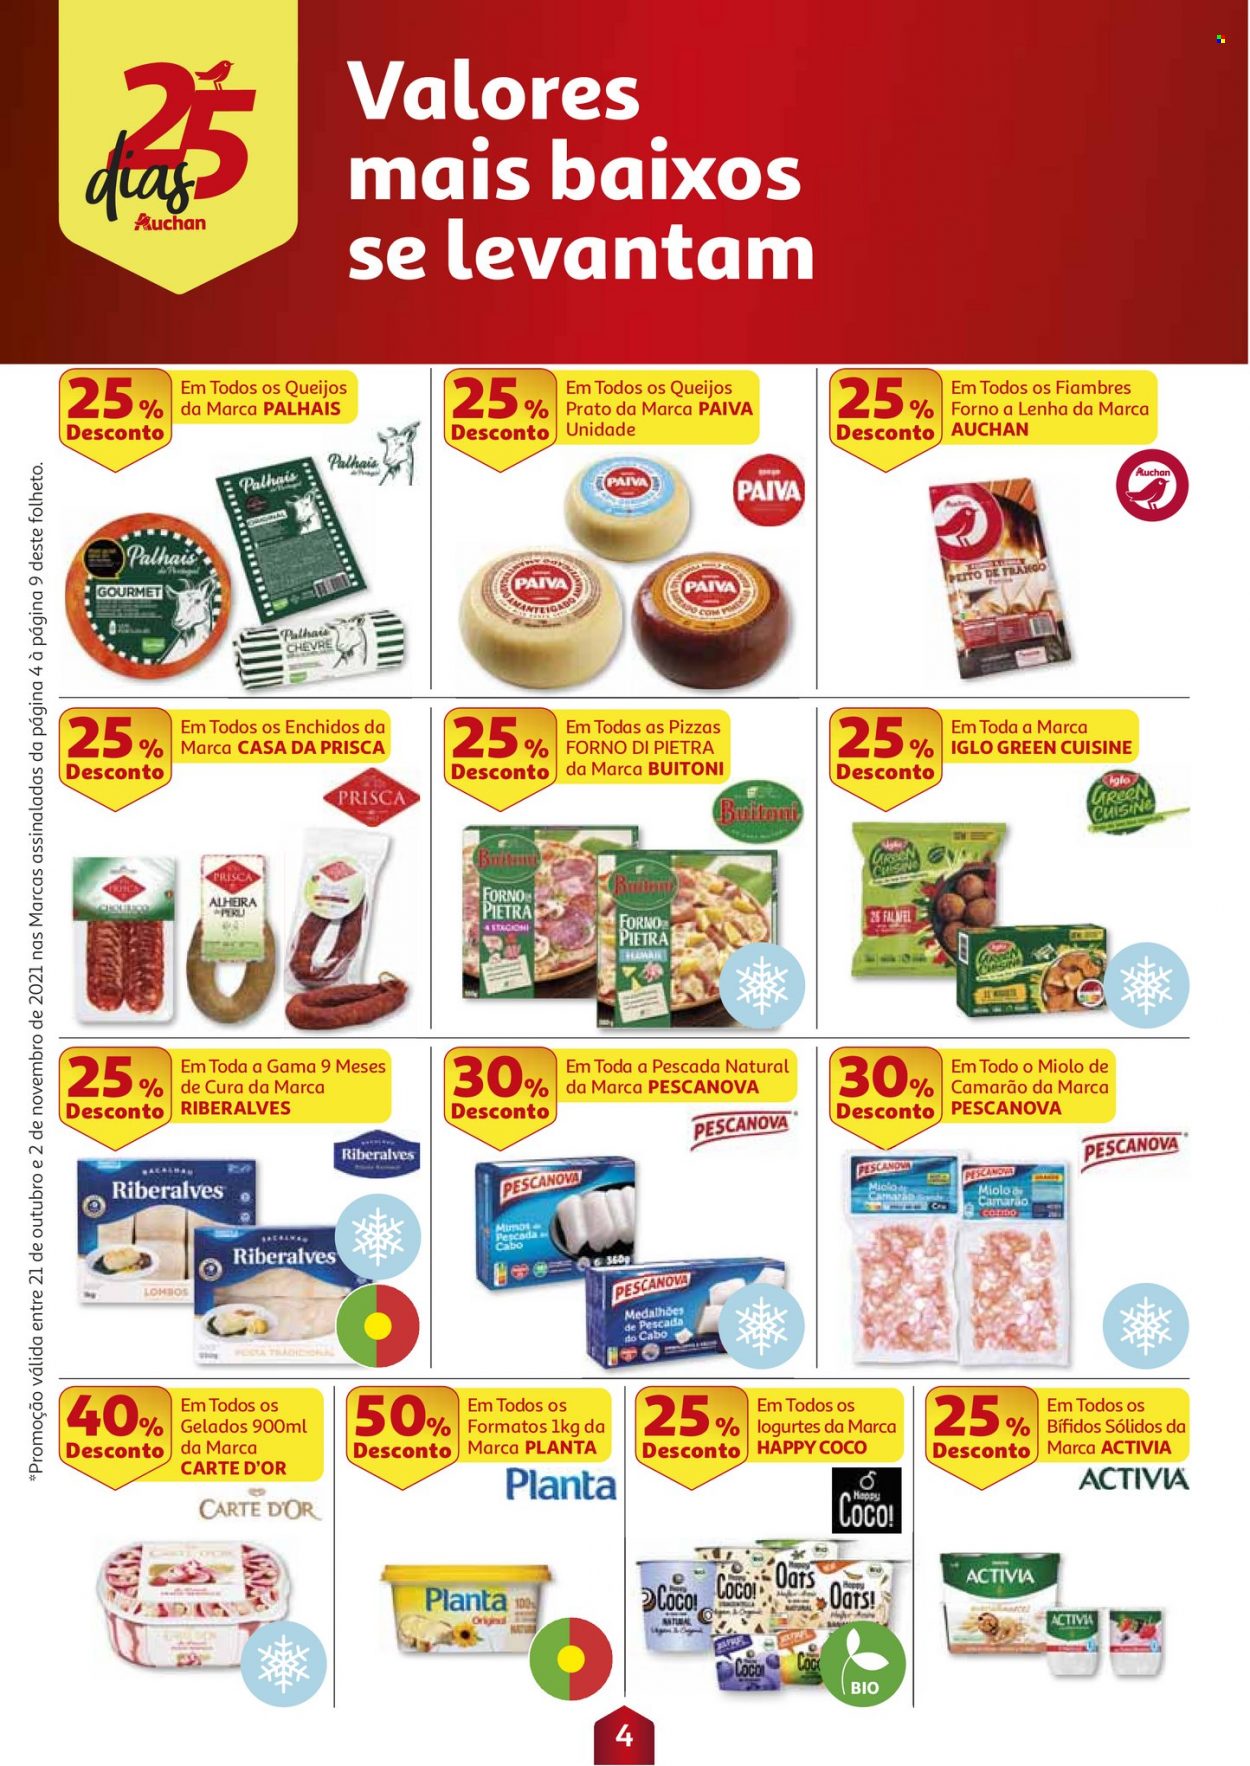 thumbnail - Folheto Auchan - 21.10.2021 - 2.11.2021 - Produtos em promoção - perú, camarão, Iglo, filetes de peixe, alheira, Activia, gelado, Carte d'Or, coco, prato, forno. Página 4.